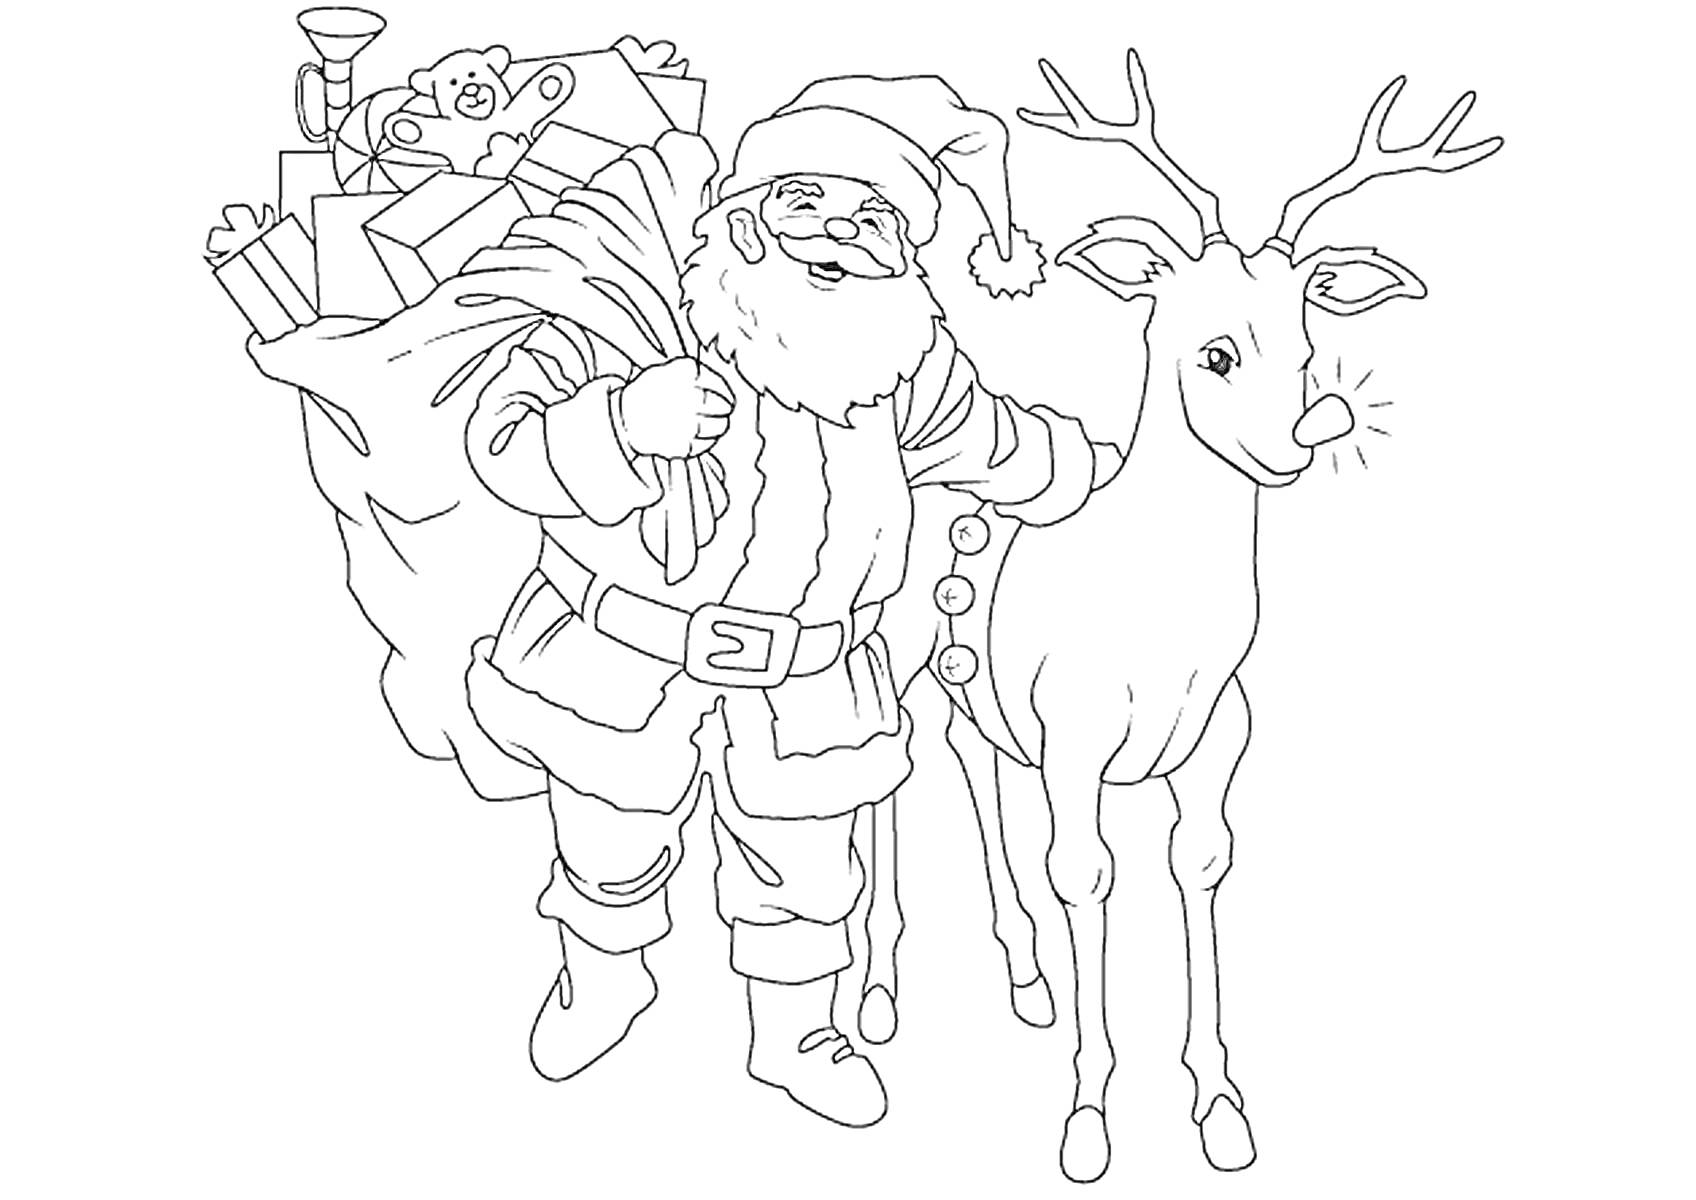 Дед Мороз с мешком подарков и олень с красным носом